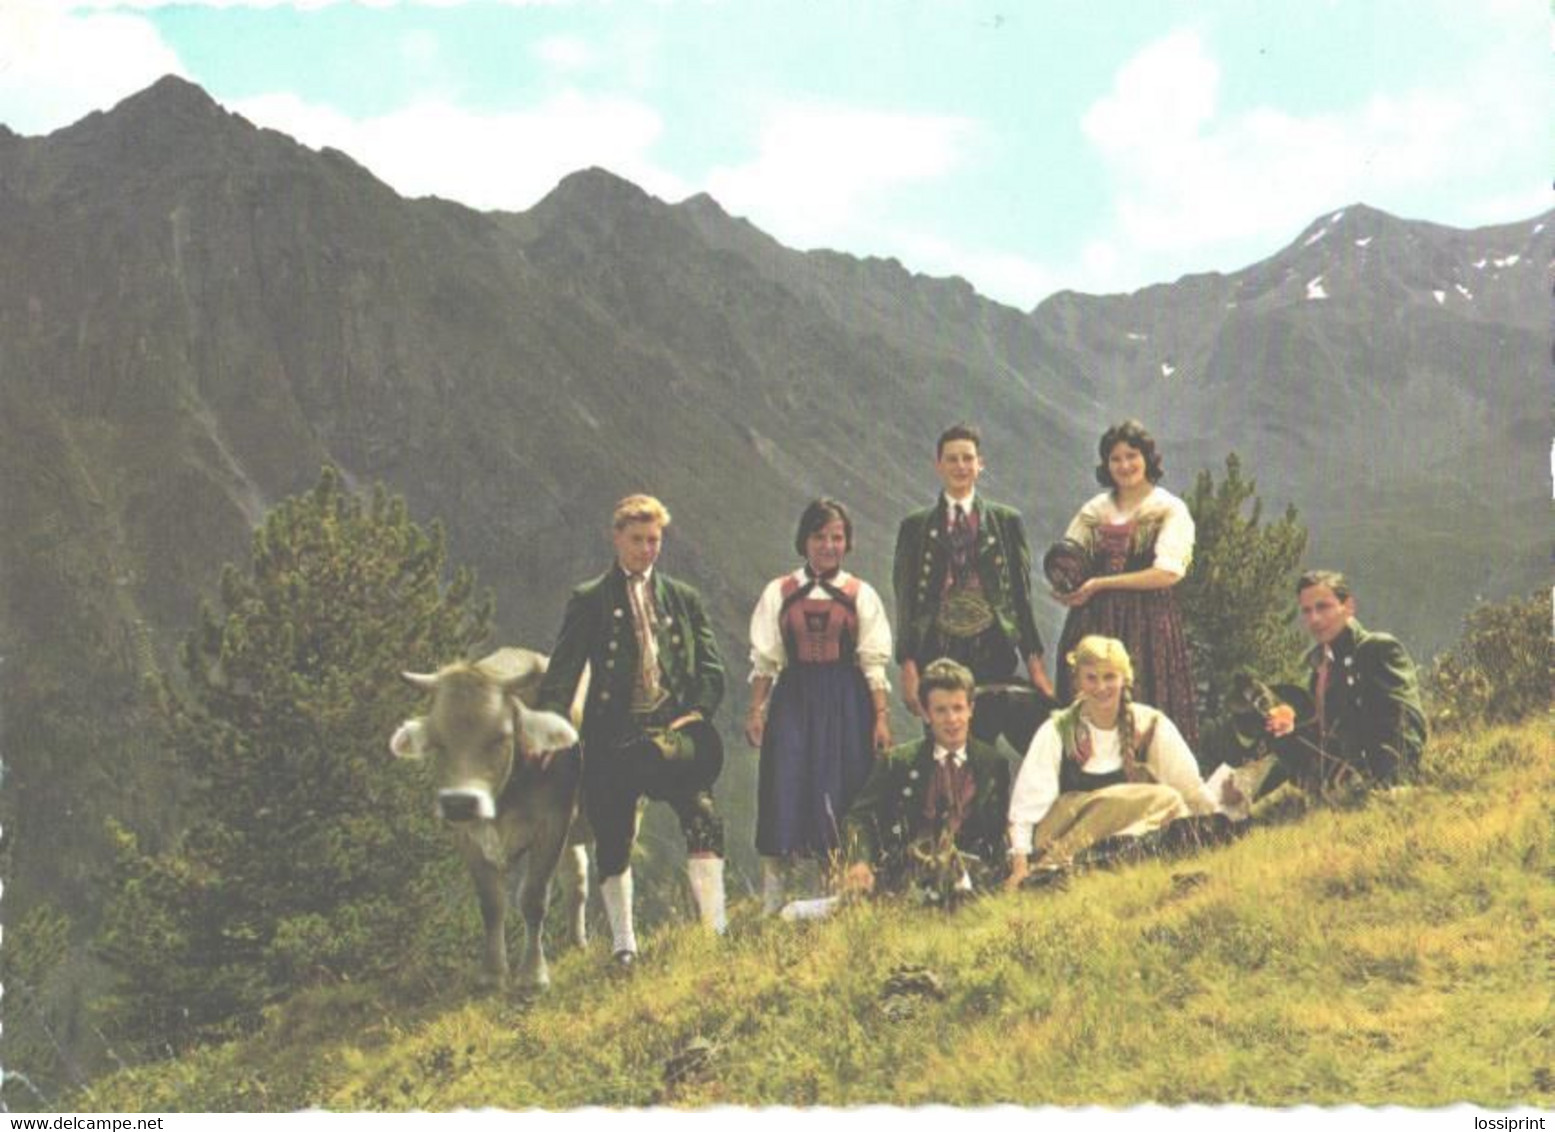 Austria:Tirol Mountains, Upper Tirol Dancing Group - Europe